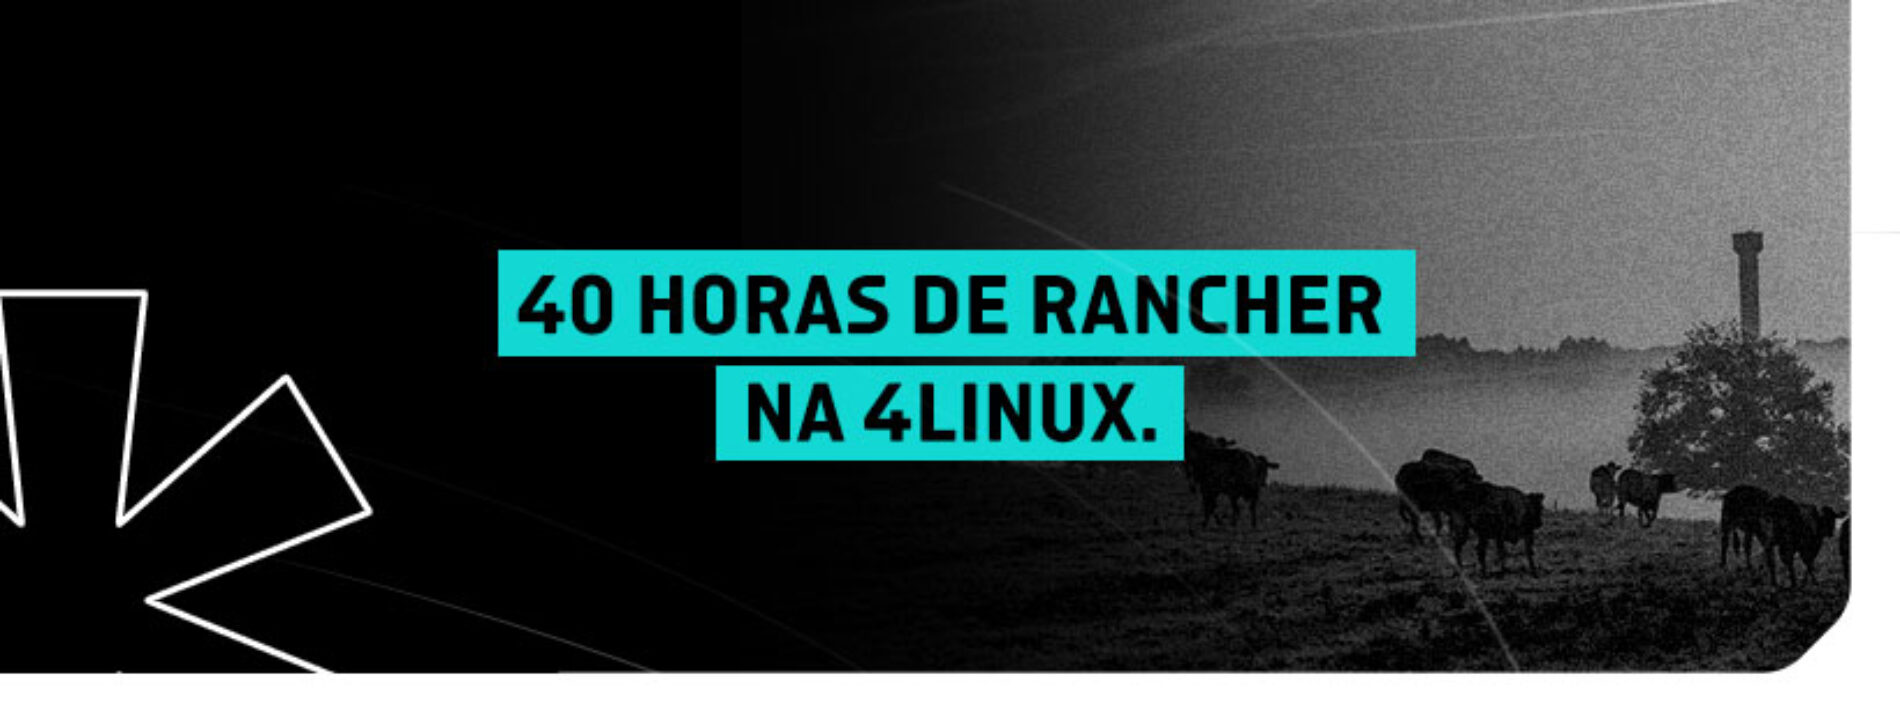 Curso de Rancher da 4Linux: Atualizado e Ampliado para 40 horas de aula